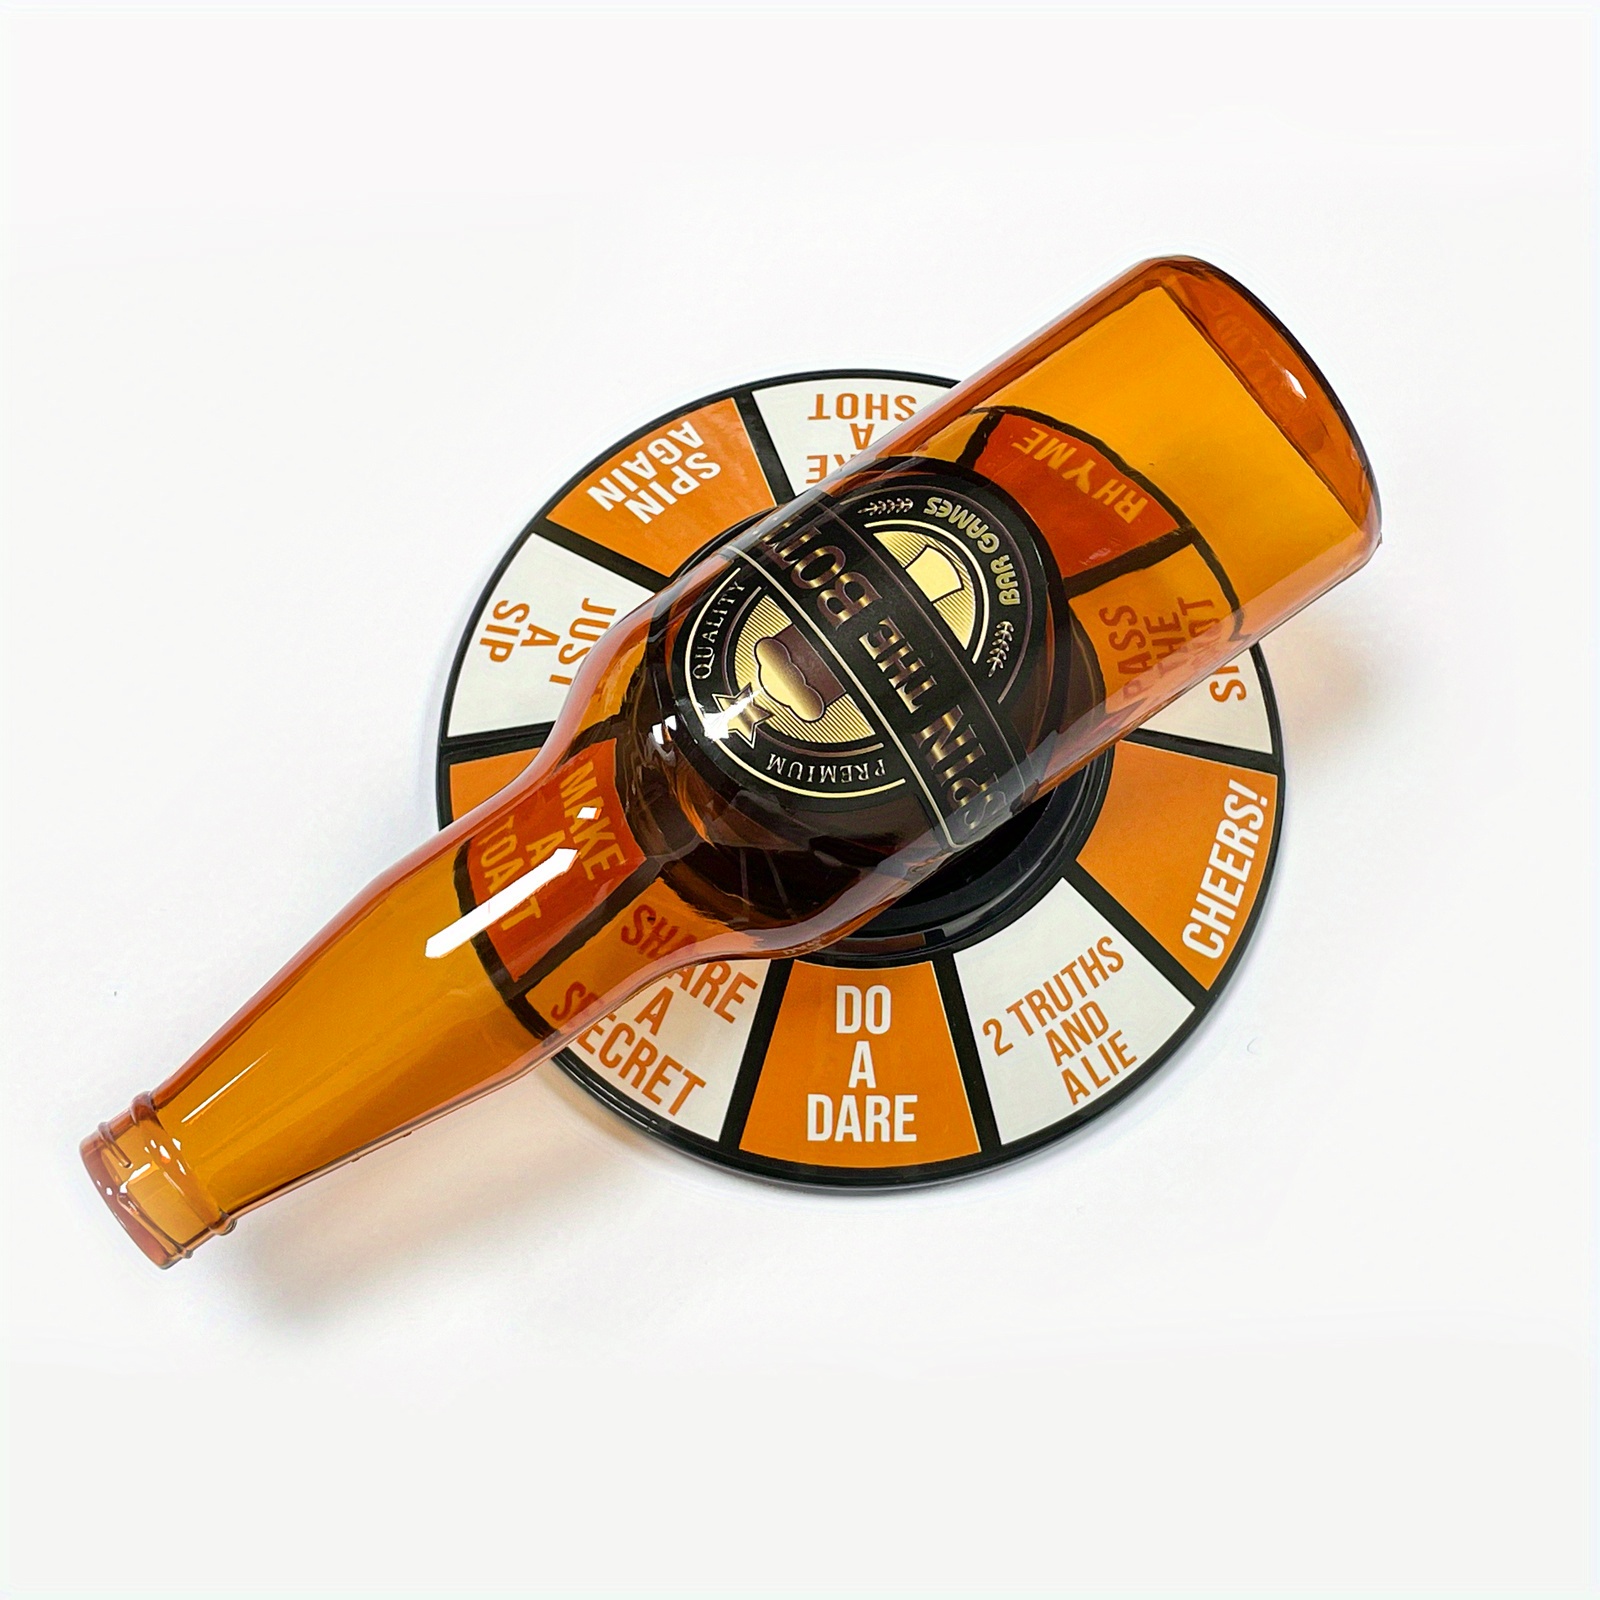 Fairly Odd Novelties Spin The Bottle Shot Spinning Shot Glass Drinking  Novelty Game